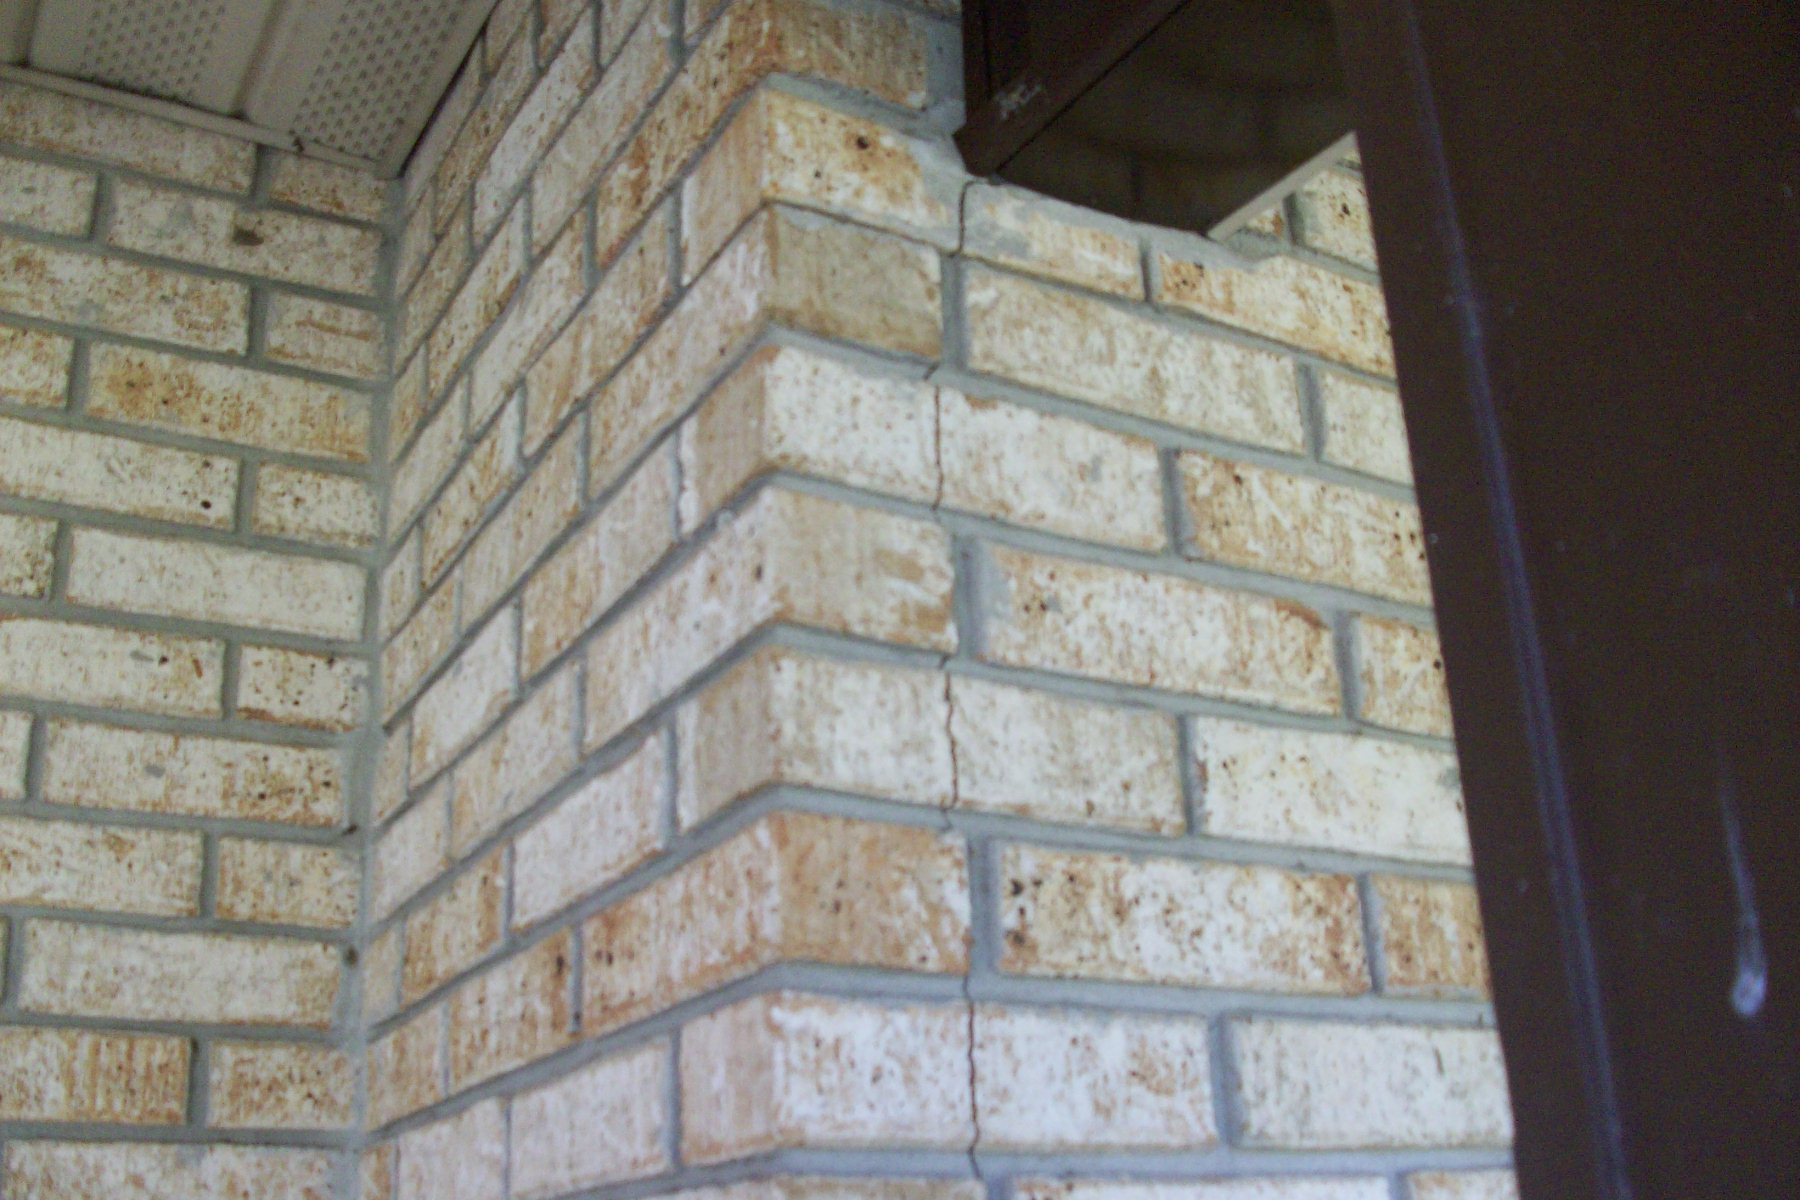 Cracks in brick siding Ocala sinkhole